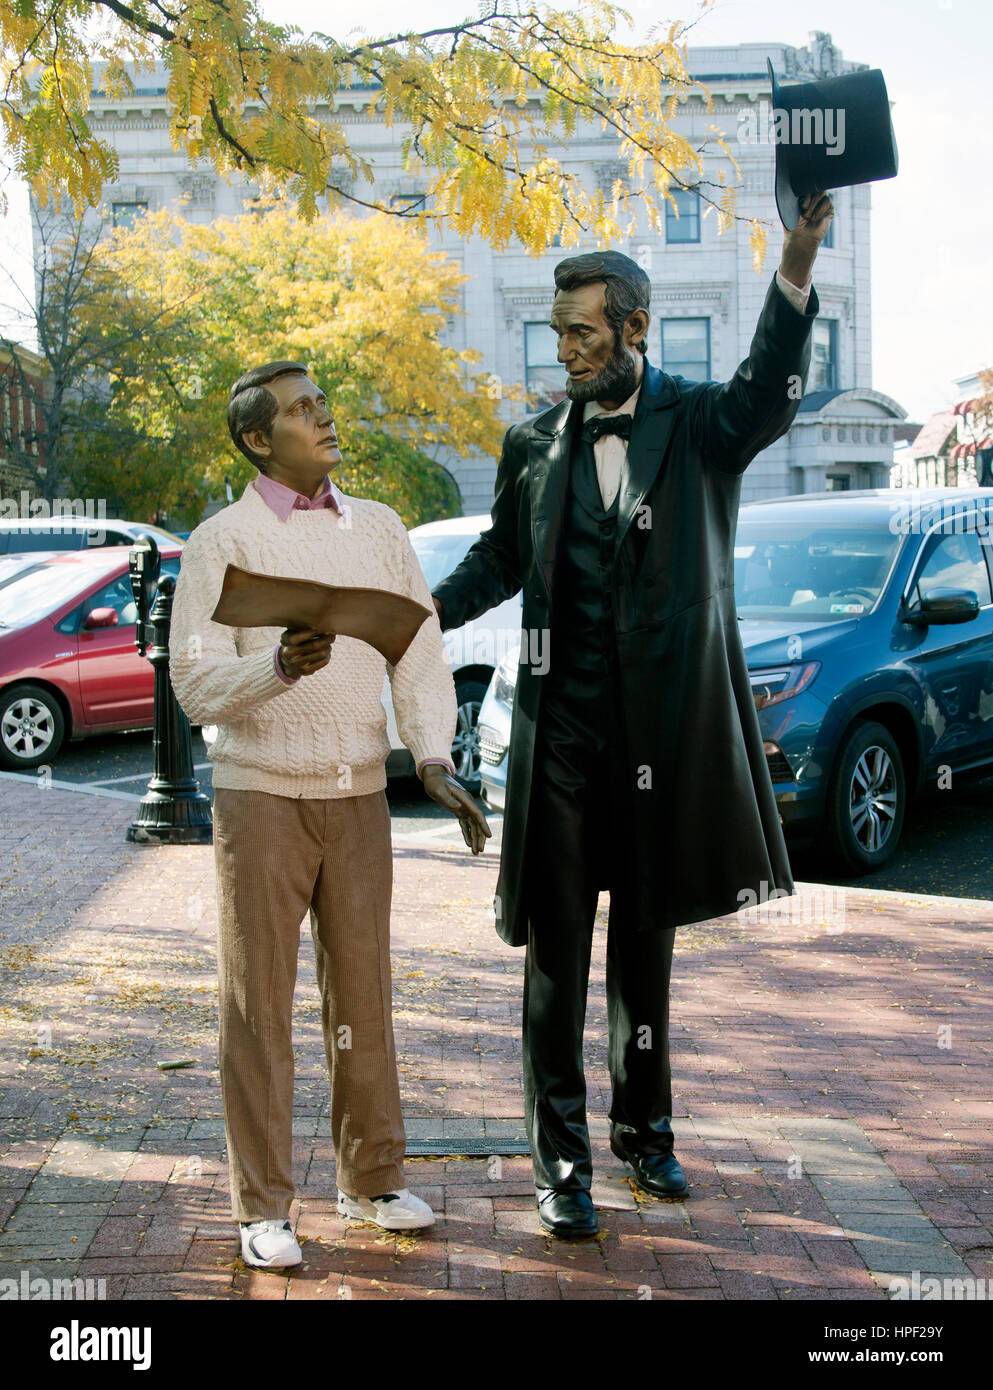 Estatuas de bronce del presidente Abraham Lincoln y lo que parece ser un espantado Perry como en Gettysburg, Pennsylvania Foto de stock